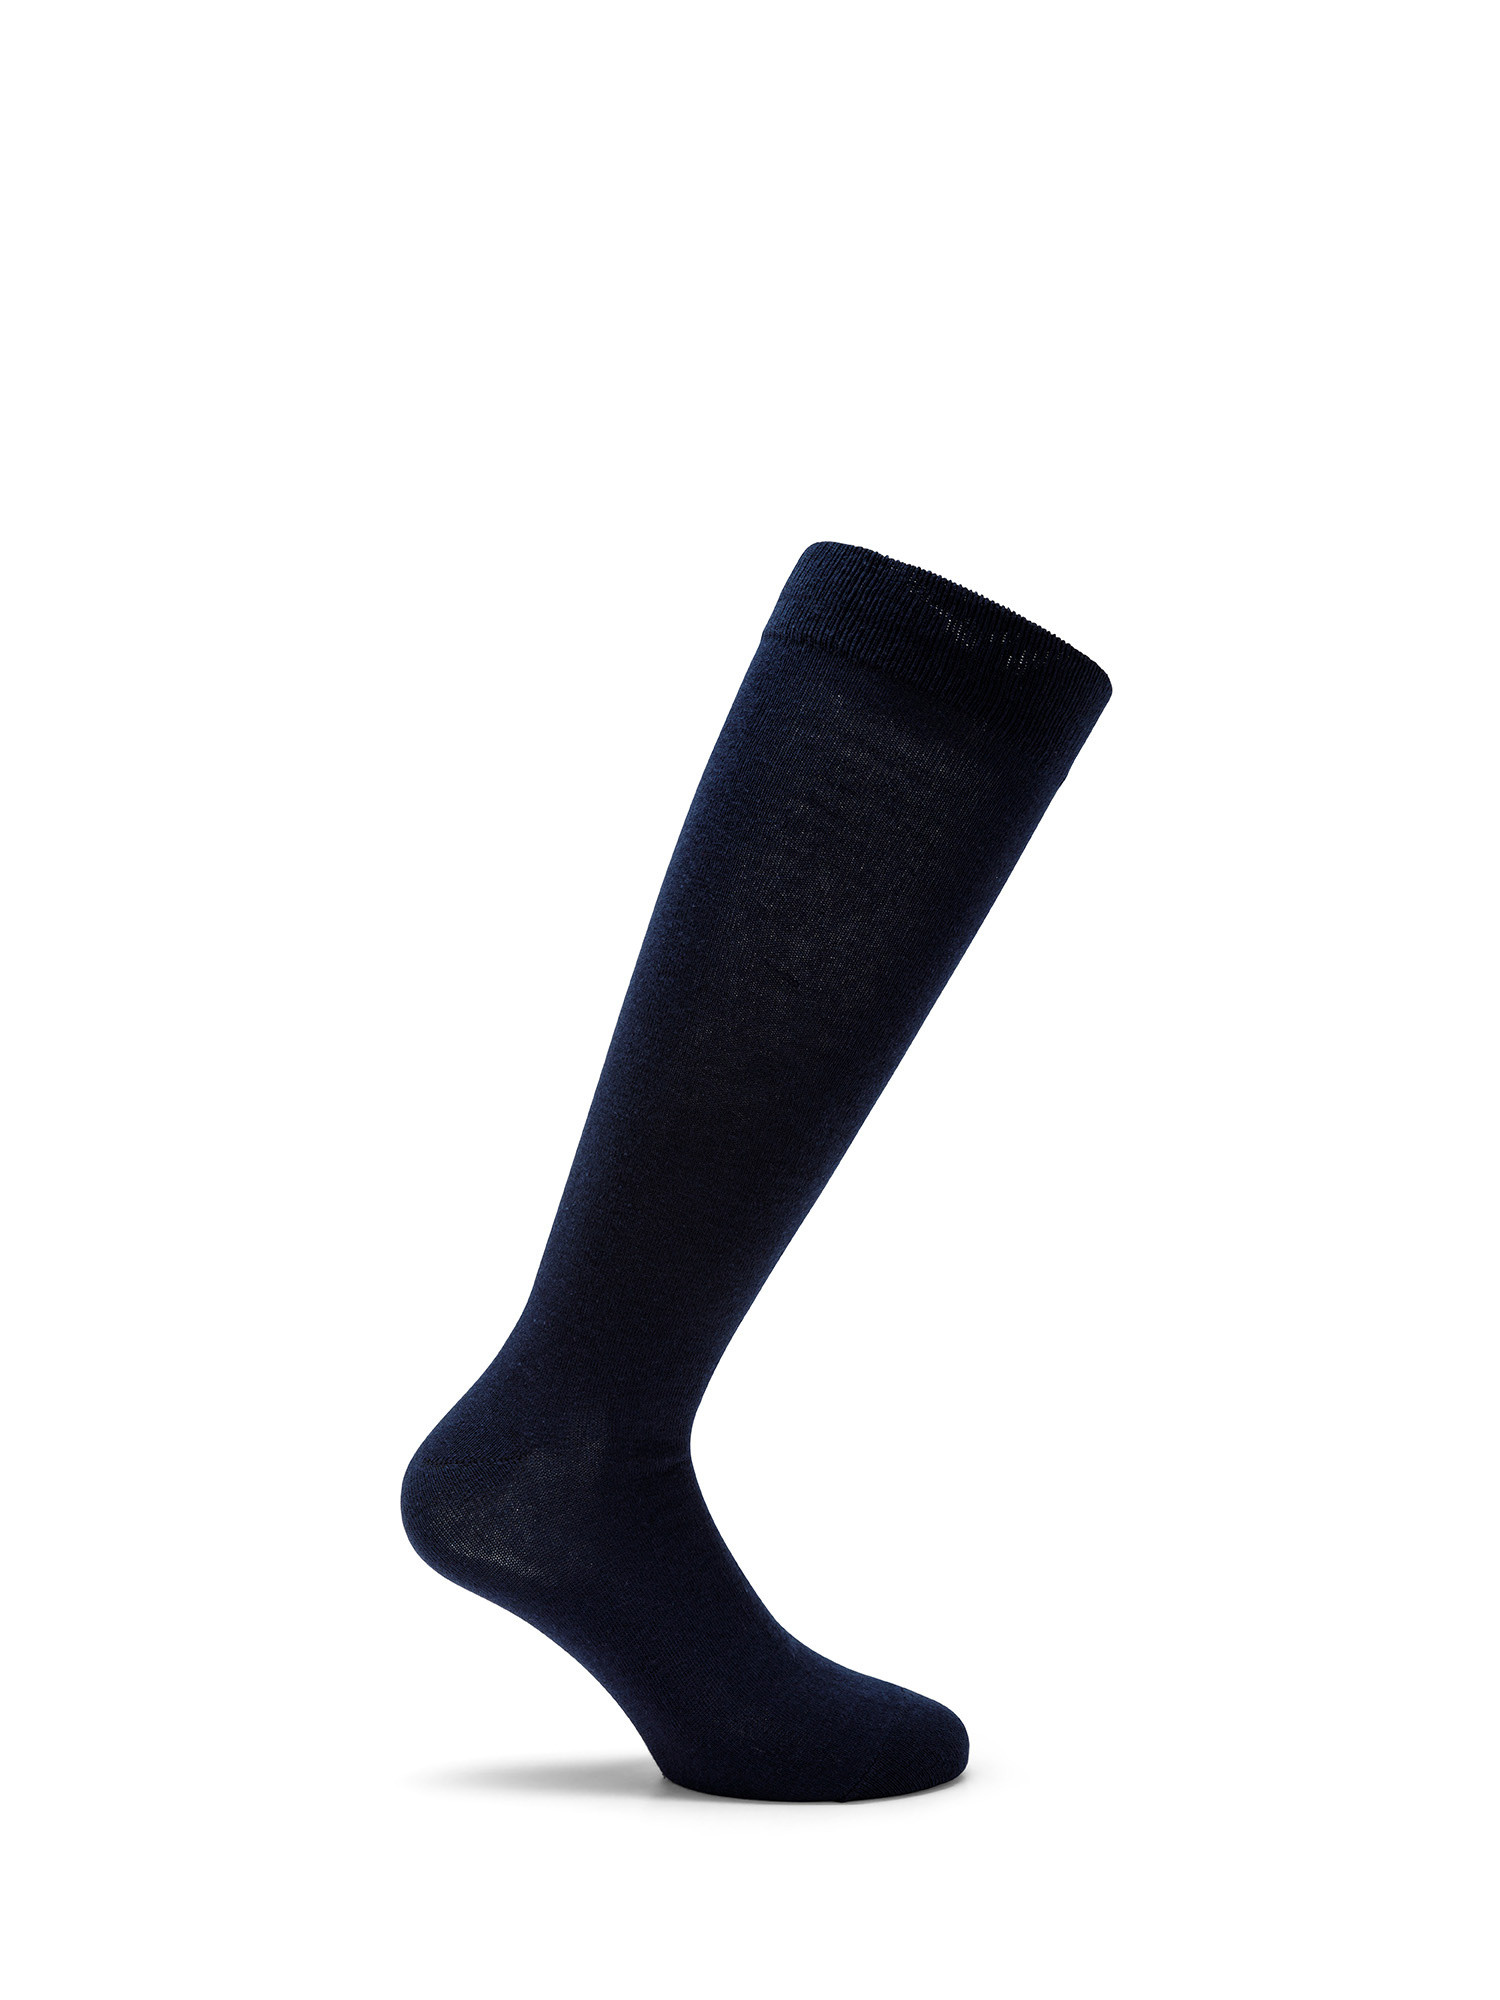 Luca D'Altieri - Set of 3 patterned long socks, Blue, large image number 2